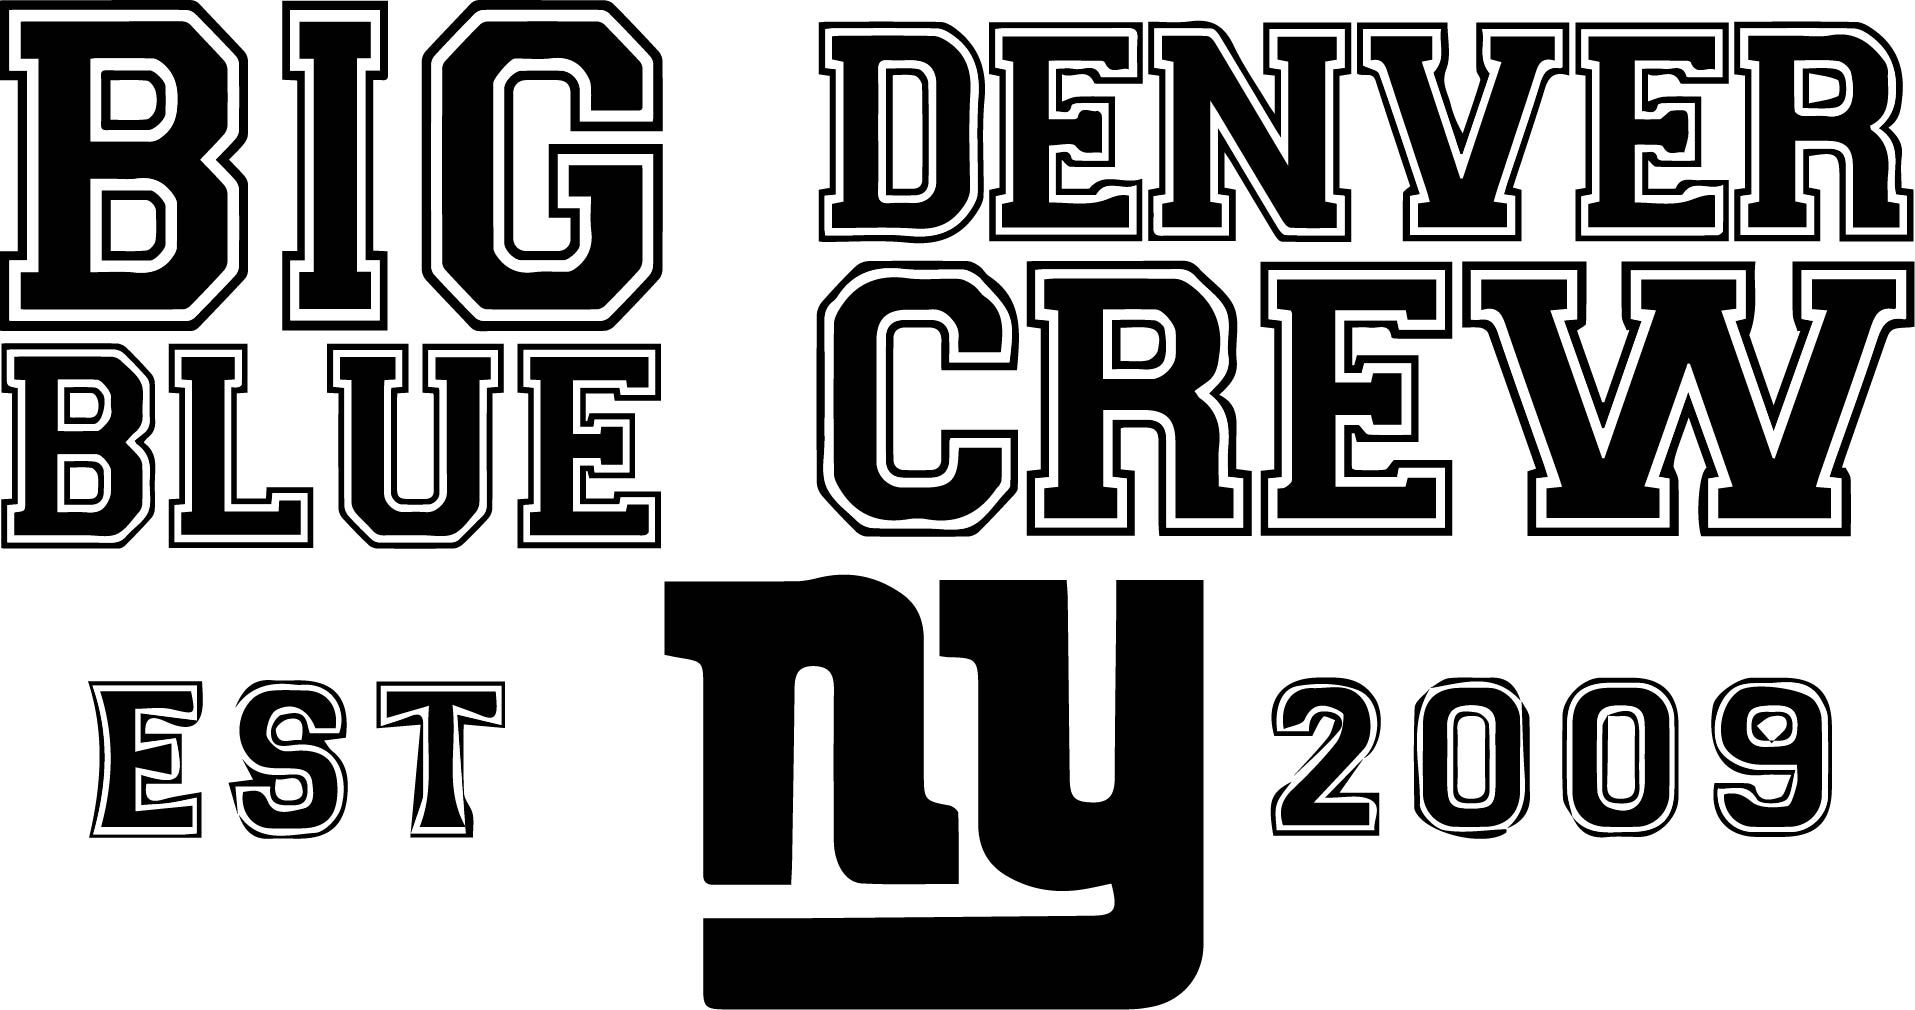 Big Blue Denver Crew - Denver Giants fans